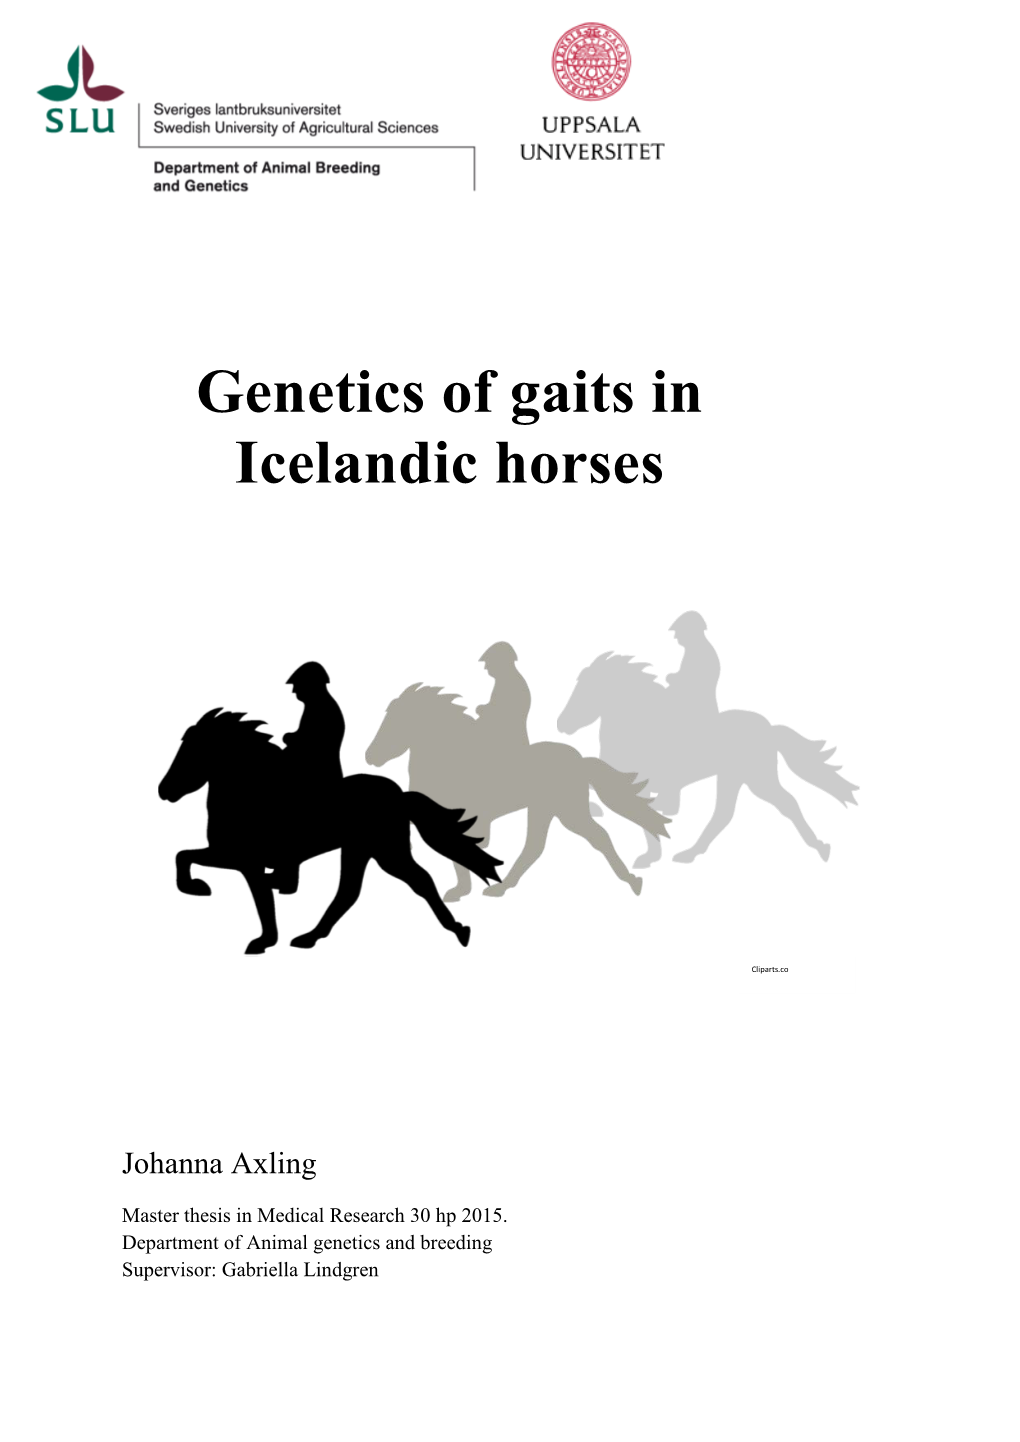 Genetics of Gaits in Icelandic Horses